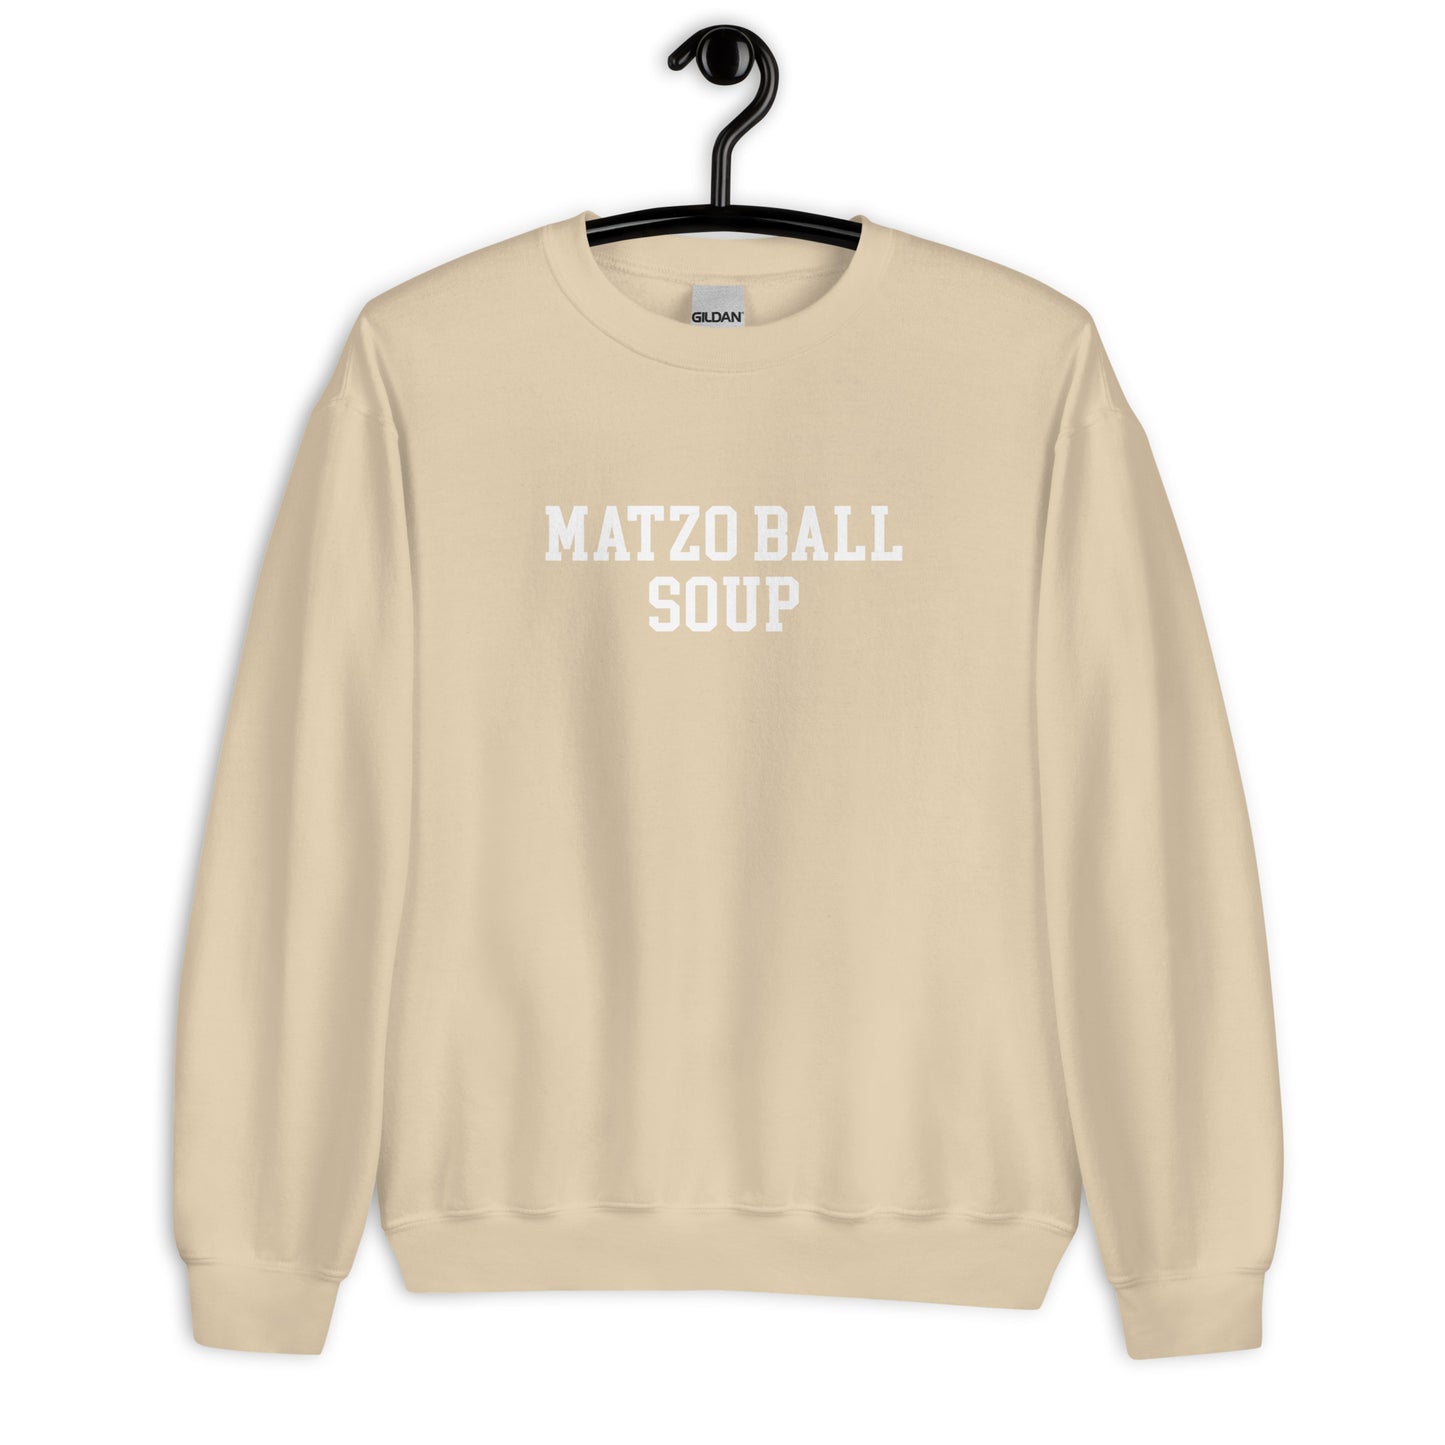 Matzo Ball Soup Sweatshirt - Straight Font